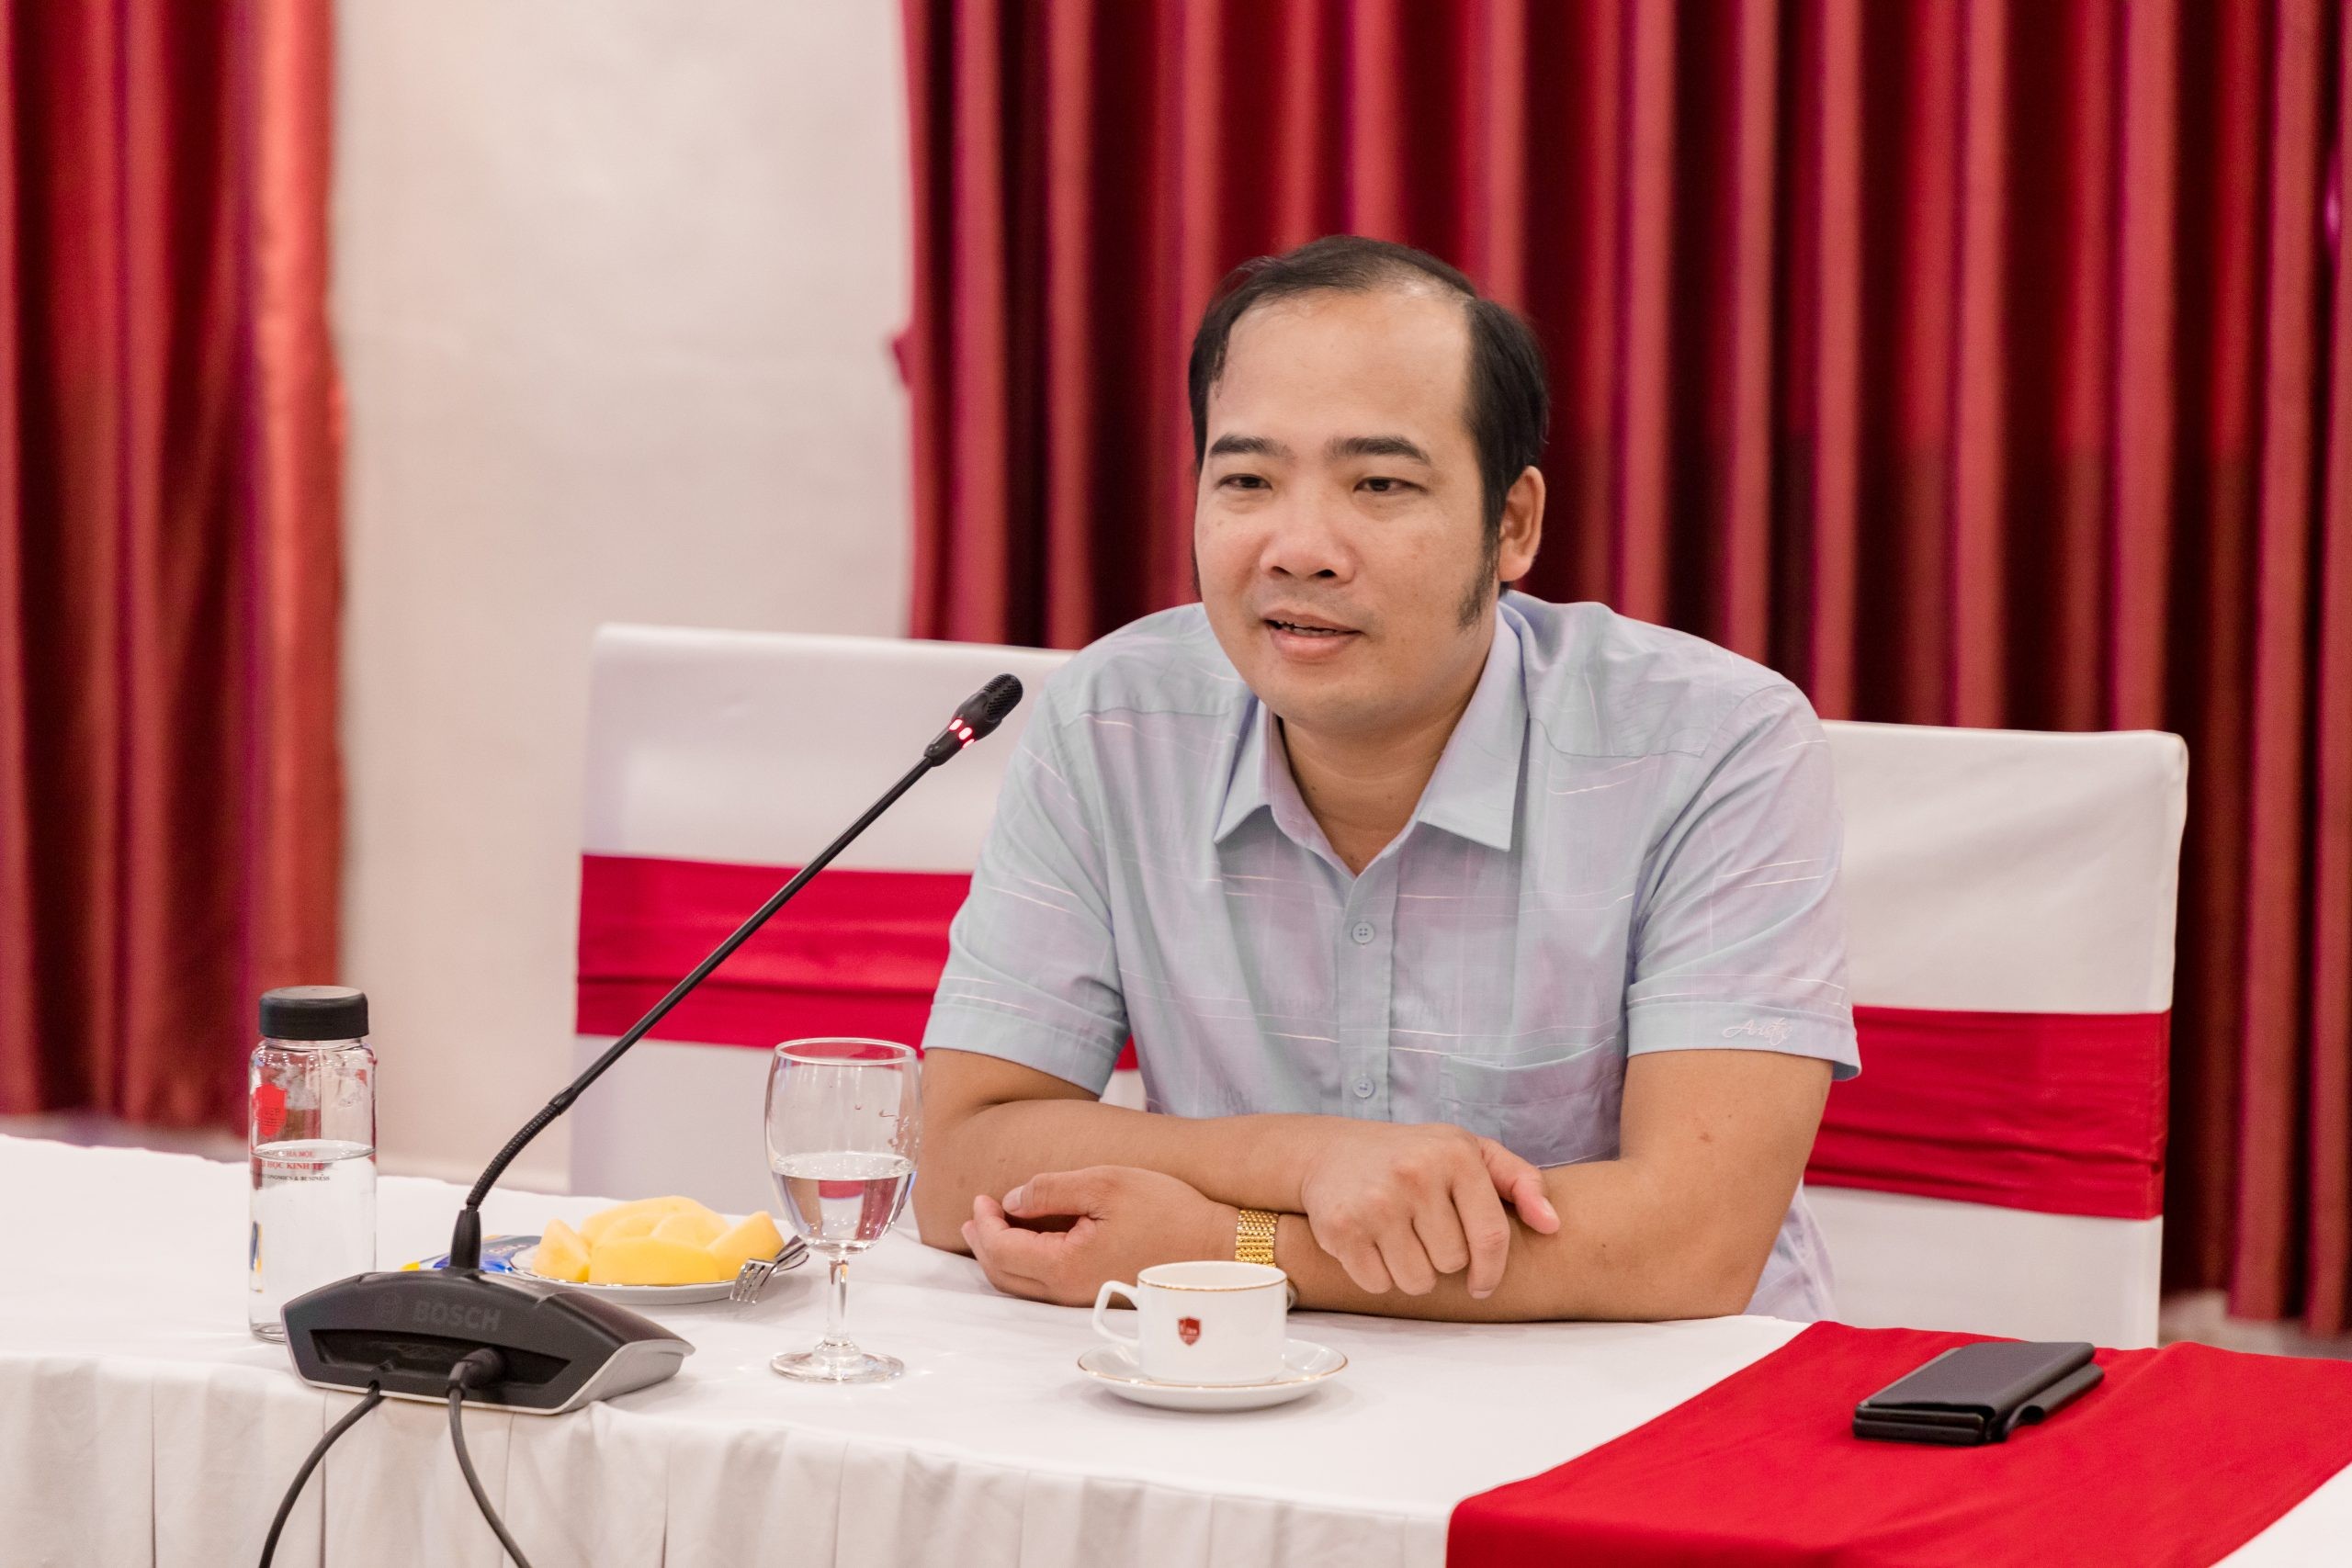 
Ông Nguyễn Anh Quê, Chủ tịch Tập đoàn G6, Ủy viên Ban Chấp hành Hiệp hội Bất động sản Việt Nam
